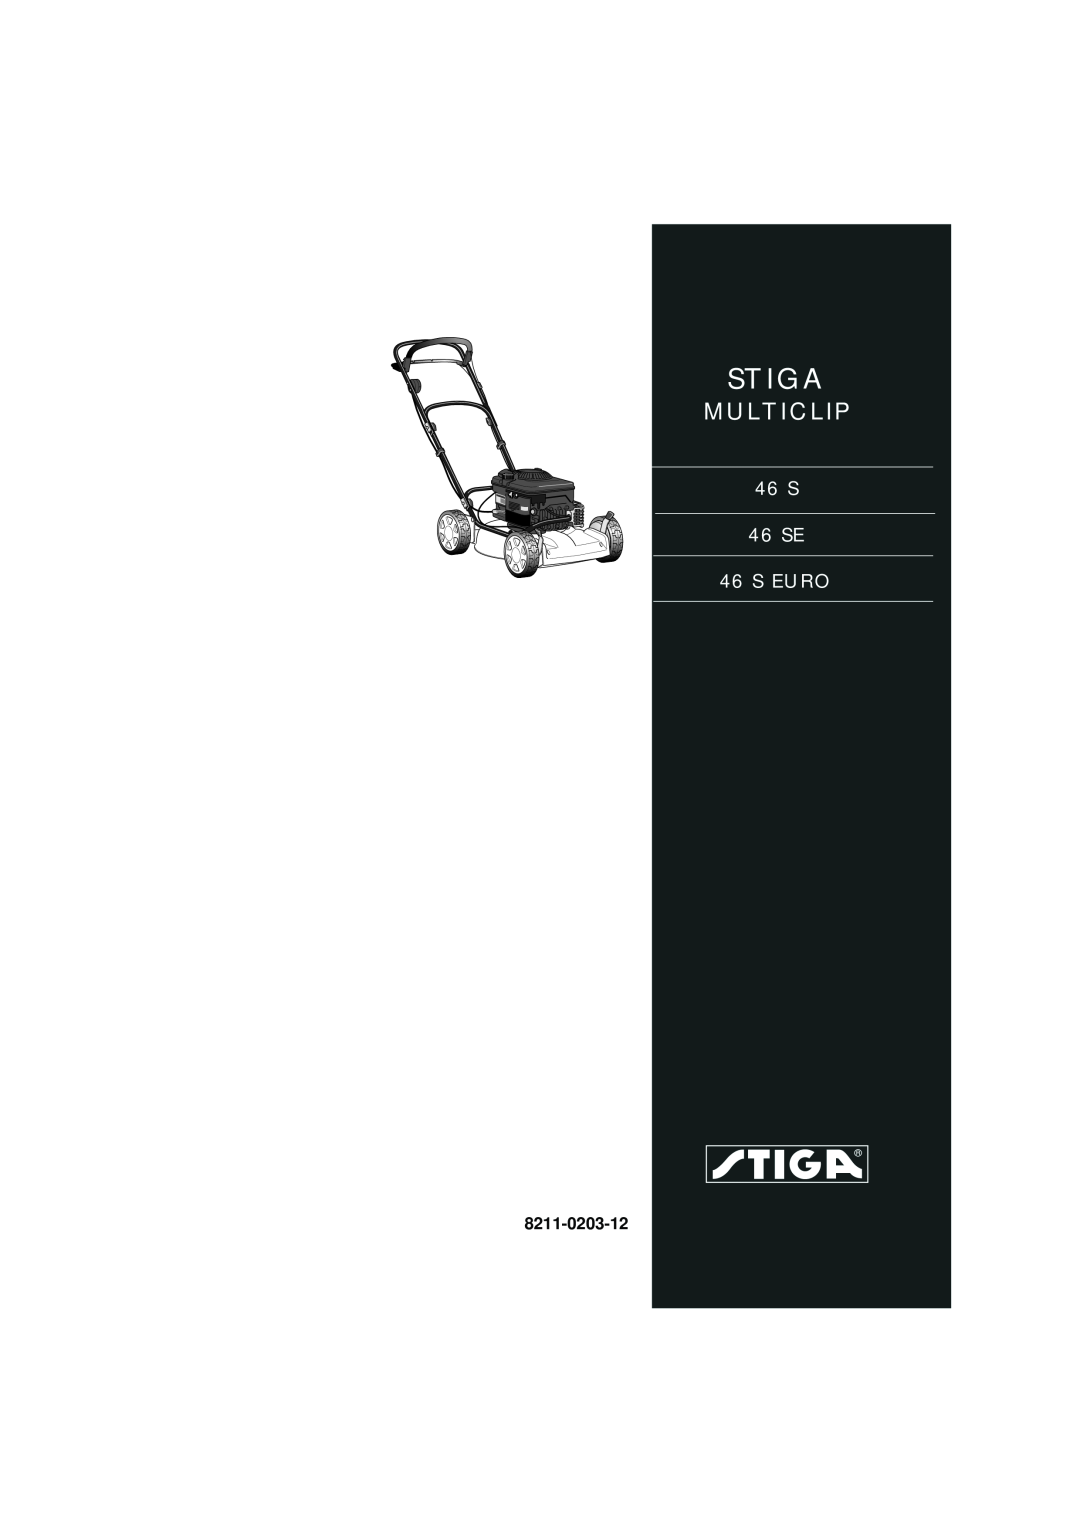 Stiga manual Stiga, Multiclip, 46 S 46 SE 46 S EURO, 8211-0203-12 